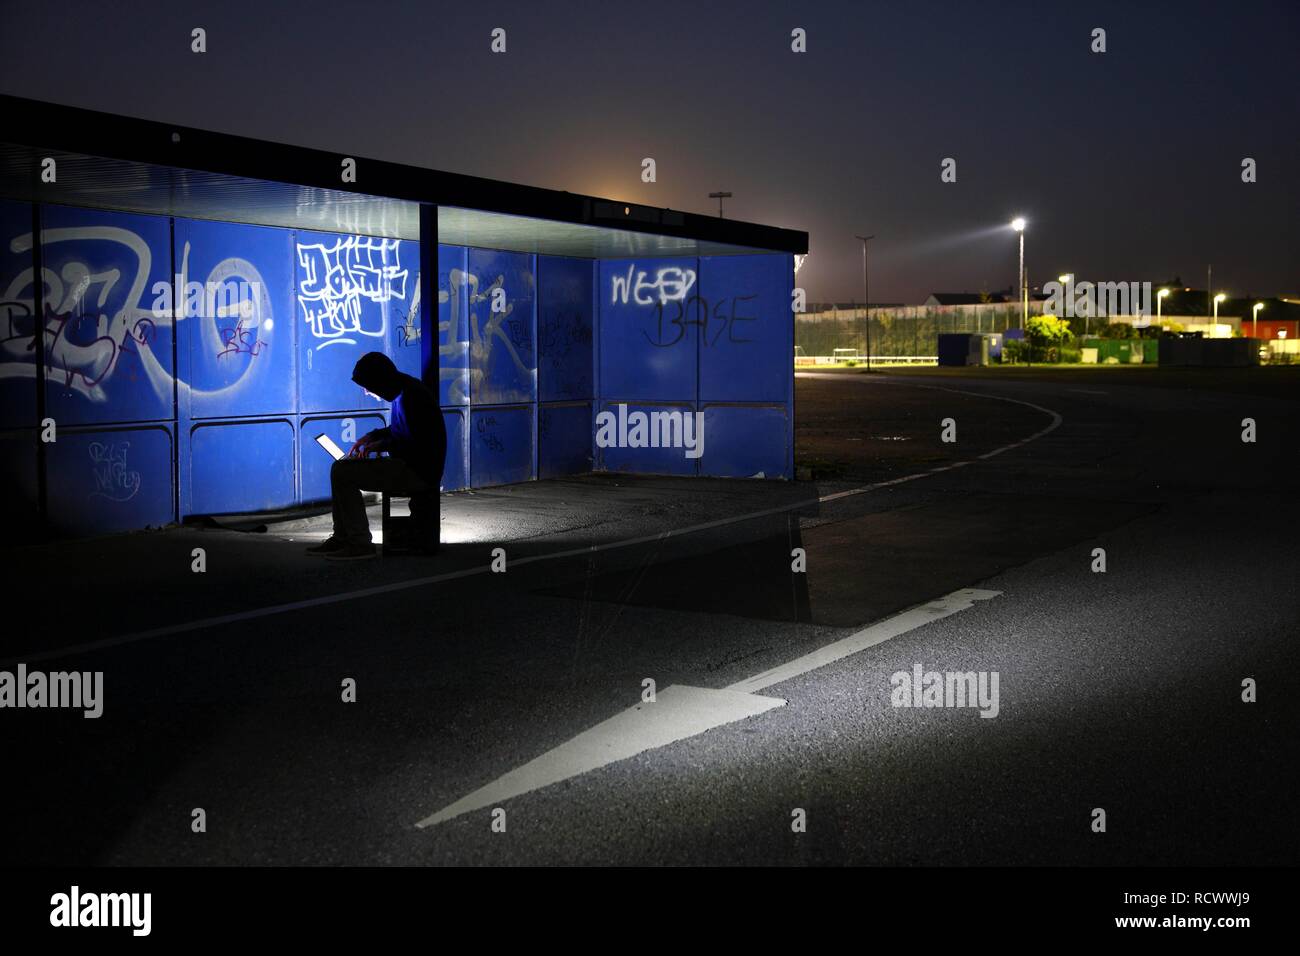 El hombre navegando en un ordenador portátil en una parada de autobús por la noche, la imagen simbólica de la piratería informática, los delitos informáticos, cibercriminalidad Foto de stock